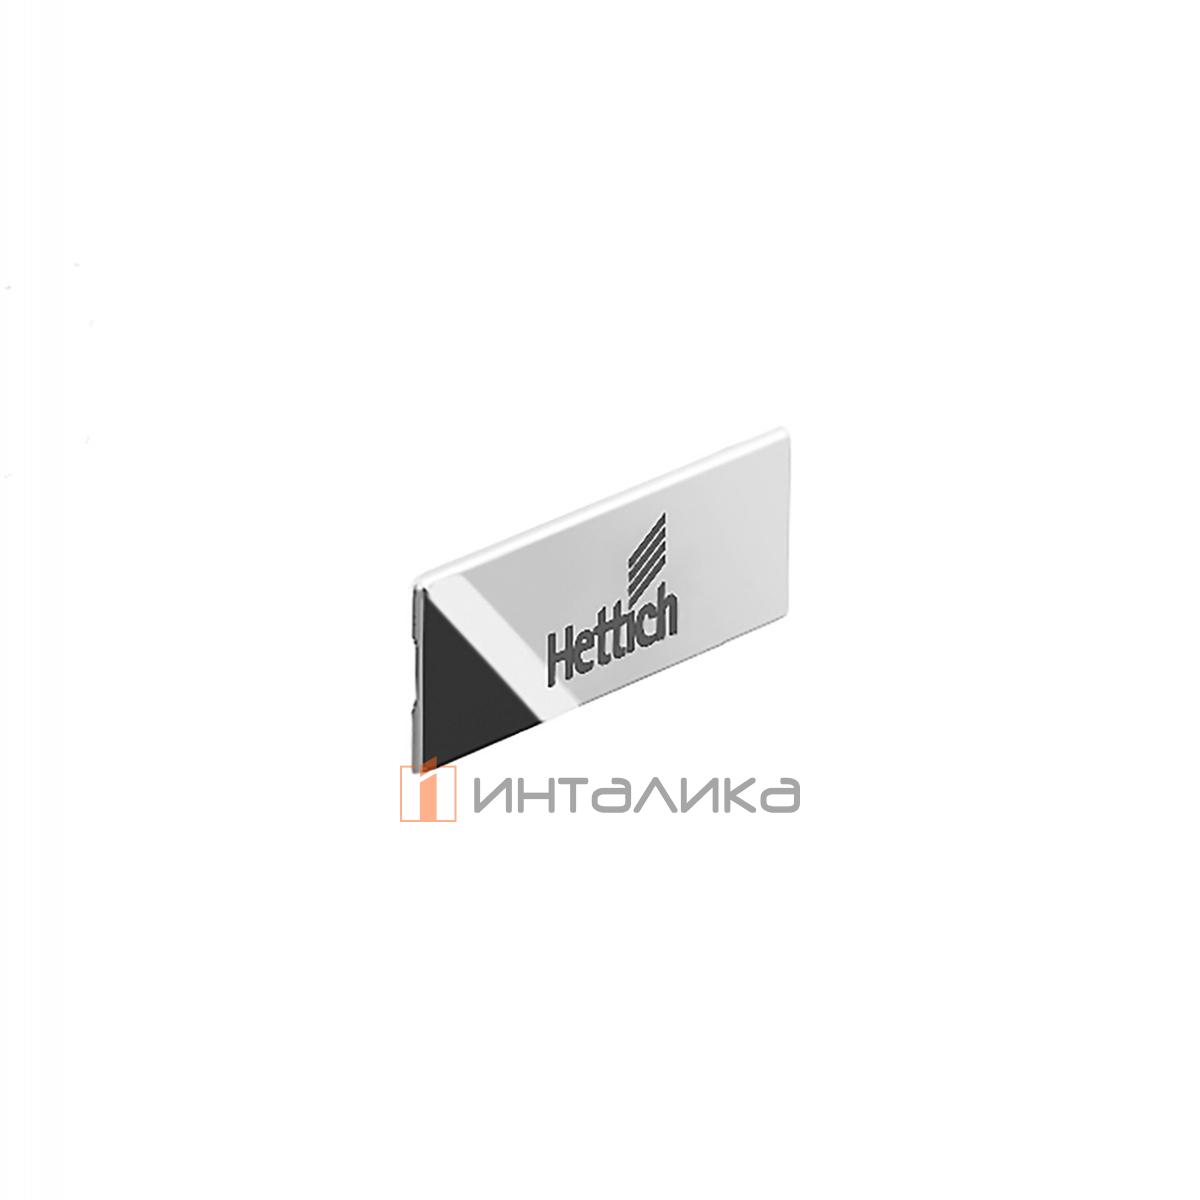 Заглушка HETTICH InnoTech Atira с лого Hettich, пластик, цвет серебристый/хром, (V300)